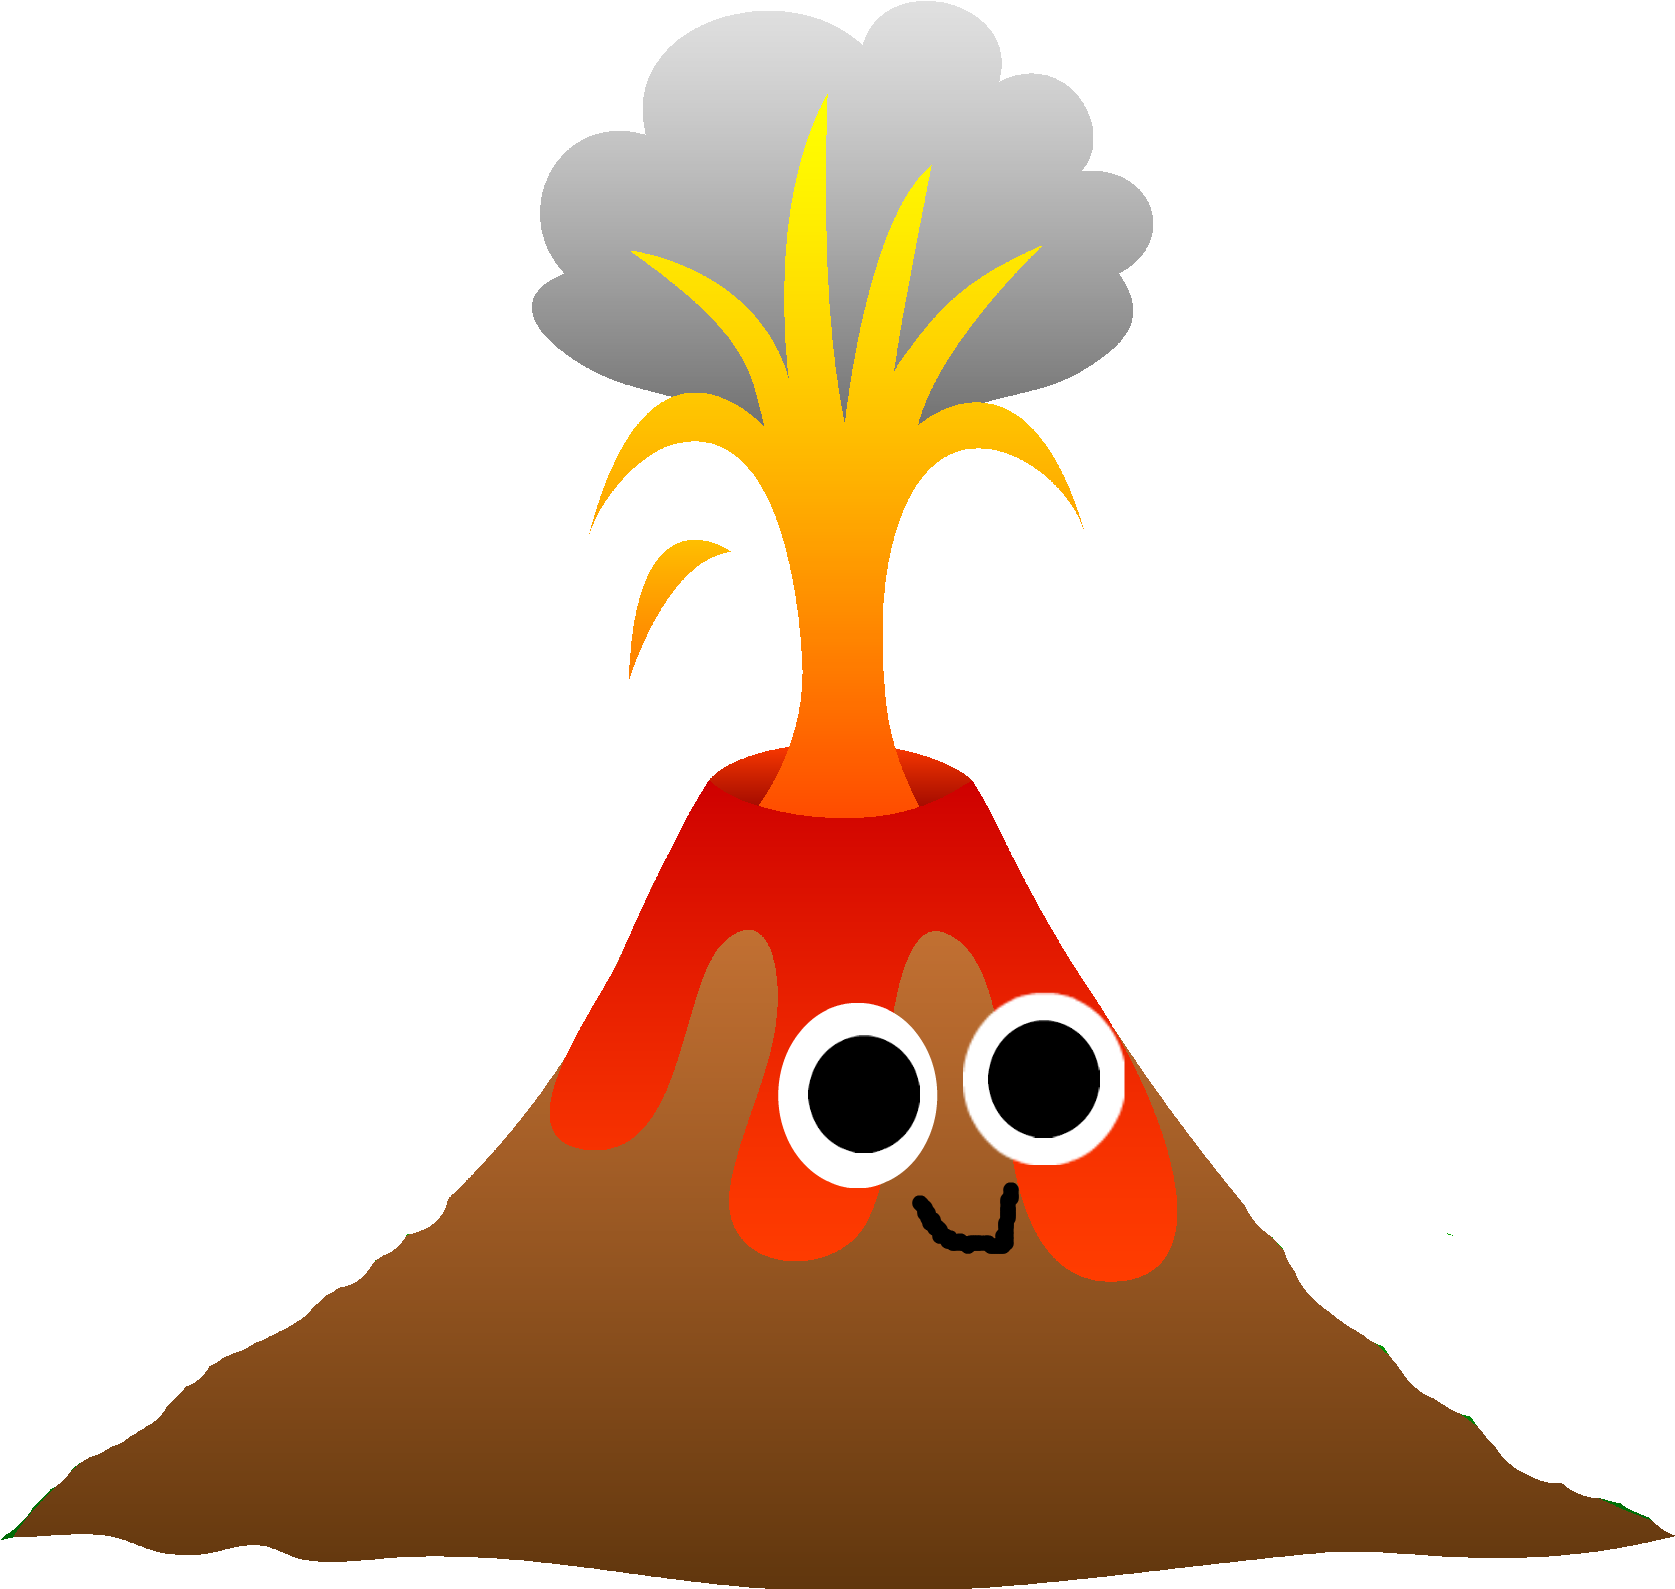 Eruption Download PNG Image